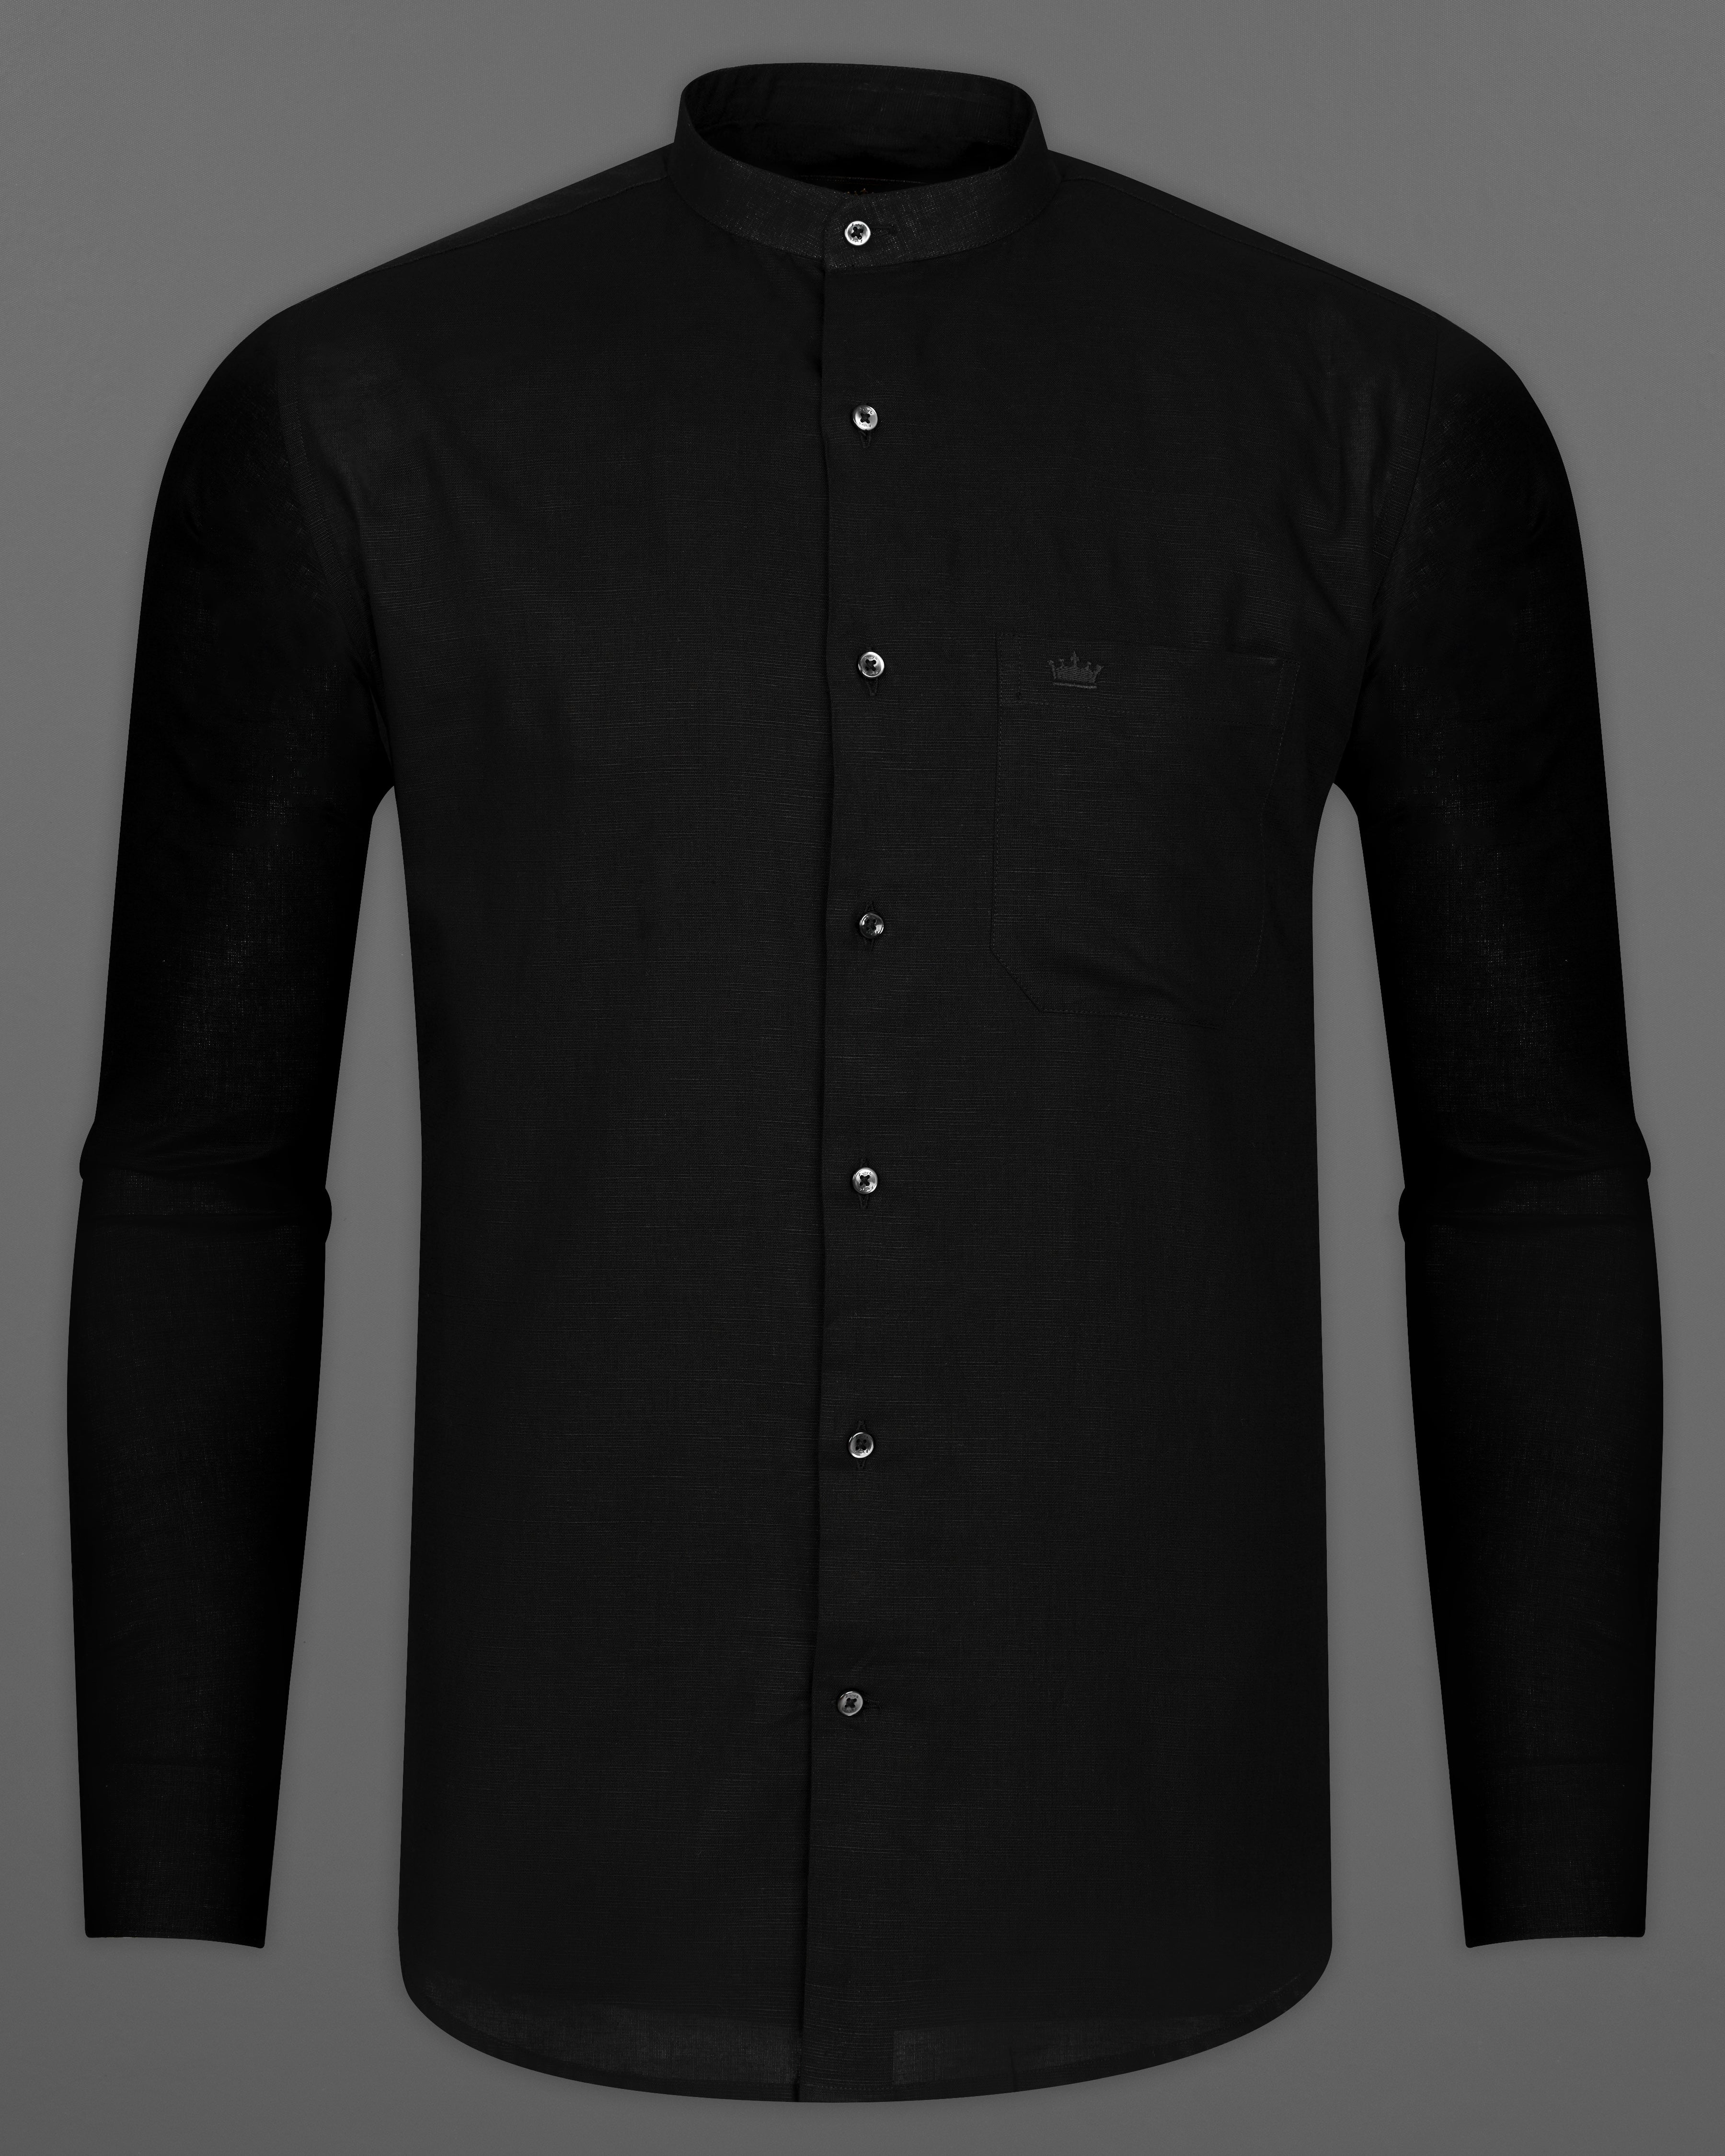 Jade Black Premium Giza Cotton shirt 2866M-BLK-38, 2866M-BLK-H-38, 2866M-BLK-39, 2866M-BLK-H-39, 2866M-BLK-40, 2866M-BLK-H-40, 2866M-BLK-42, 2866M-BLK-H-42, 2866M-BLK-44, 2866M-BLK-H-44, 2866M-BLK-46, 2866M-BLK-H-46, 2866M-BLK-48, 2866M-BLK-H-48, 2866M-BLK-50, 2866M-BLK-H-50, 2866M-BLK-52, 2866M-BLK-H-52